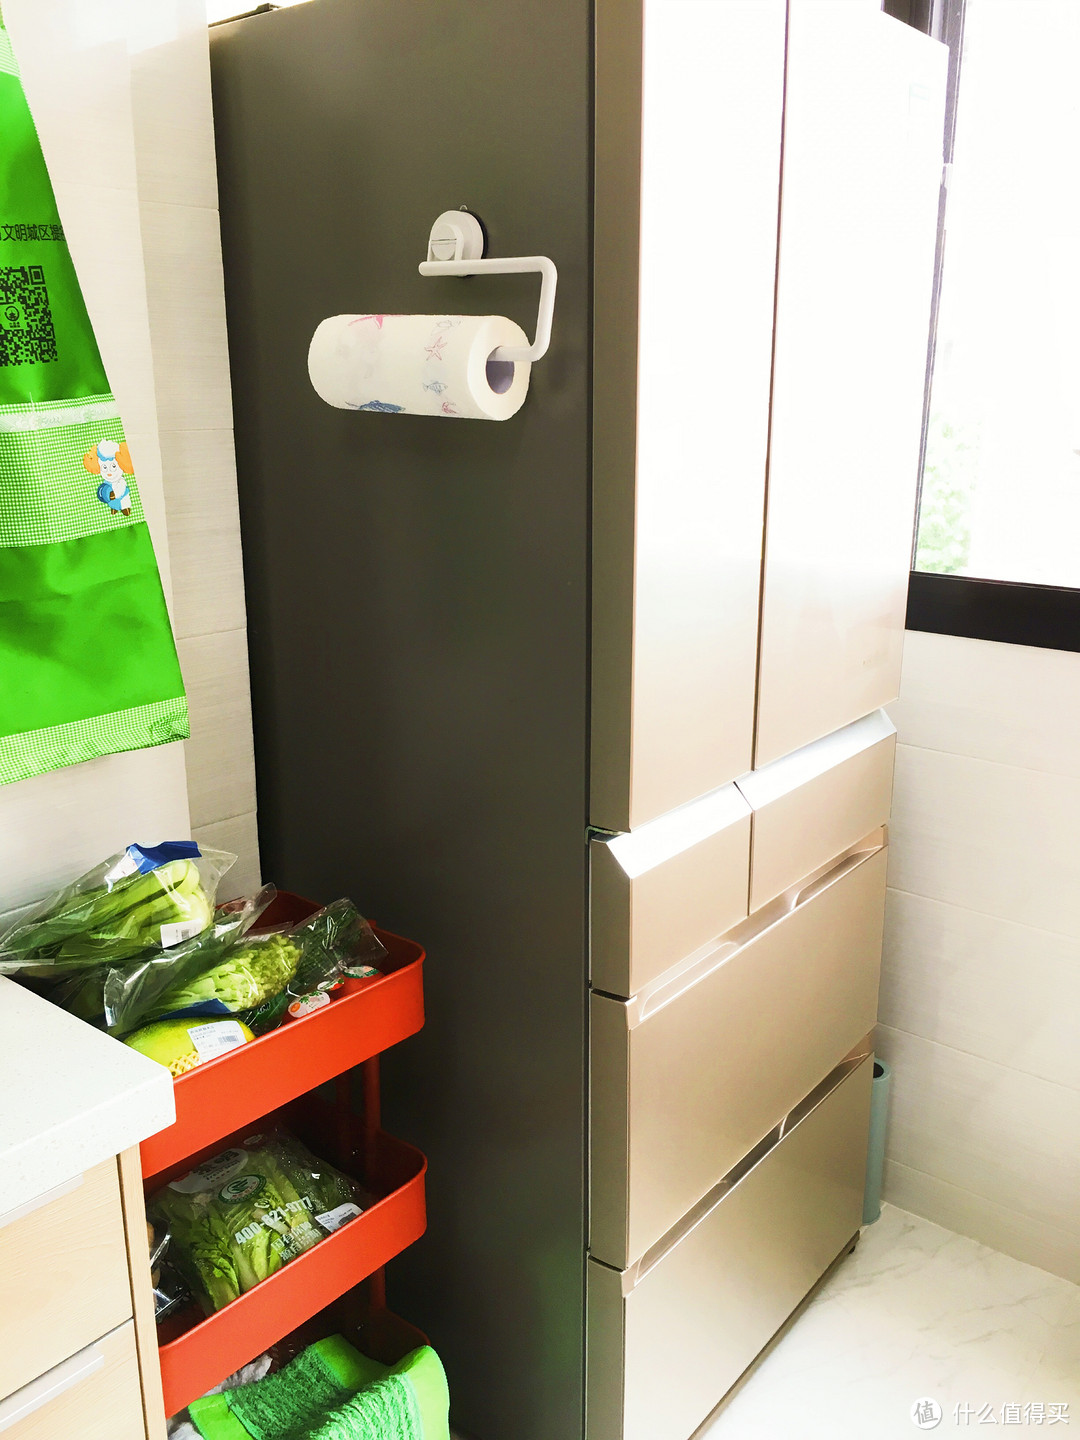 国产松下多门冰箱带自动制冰